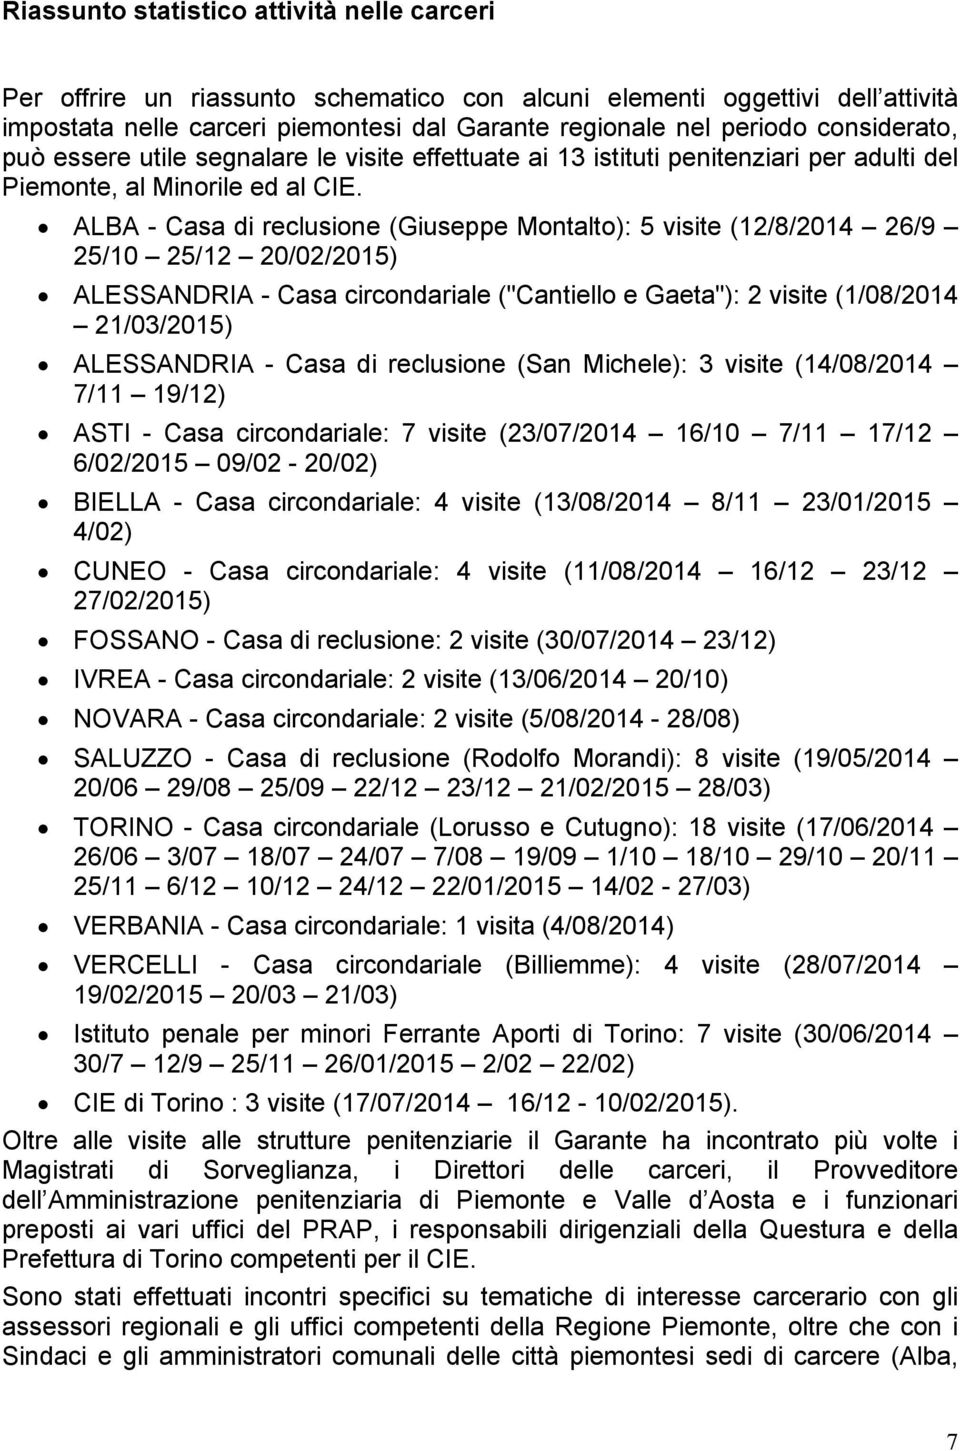 ALBA - Casa di reclusione (Giuseppe Montalto): 5 visite (12/8/2014 26/9 25/10 25/12 20/02/2015) ALESSANDRIA - Casa circondariale ("Cantiello e Gaeta"): 2 visite (1/08/2014 21/03/2015) ALESSANDRIA -